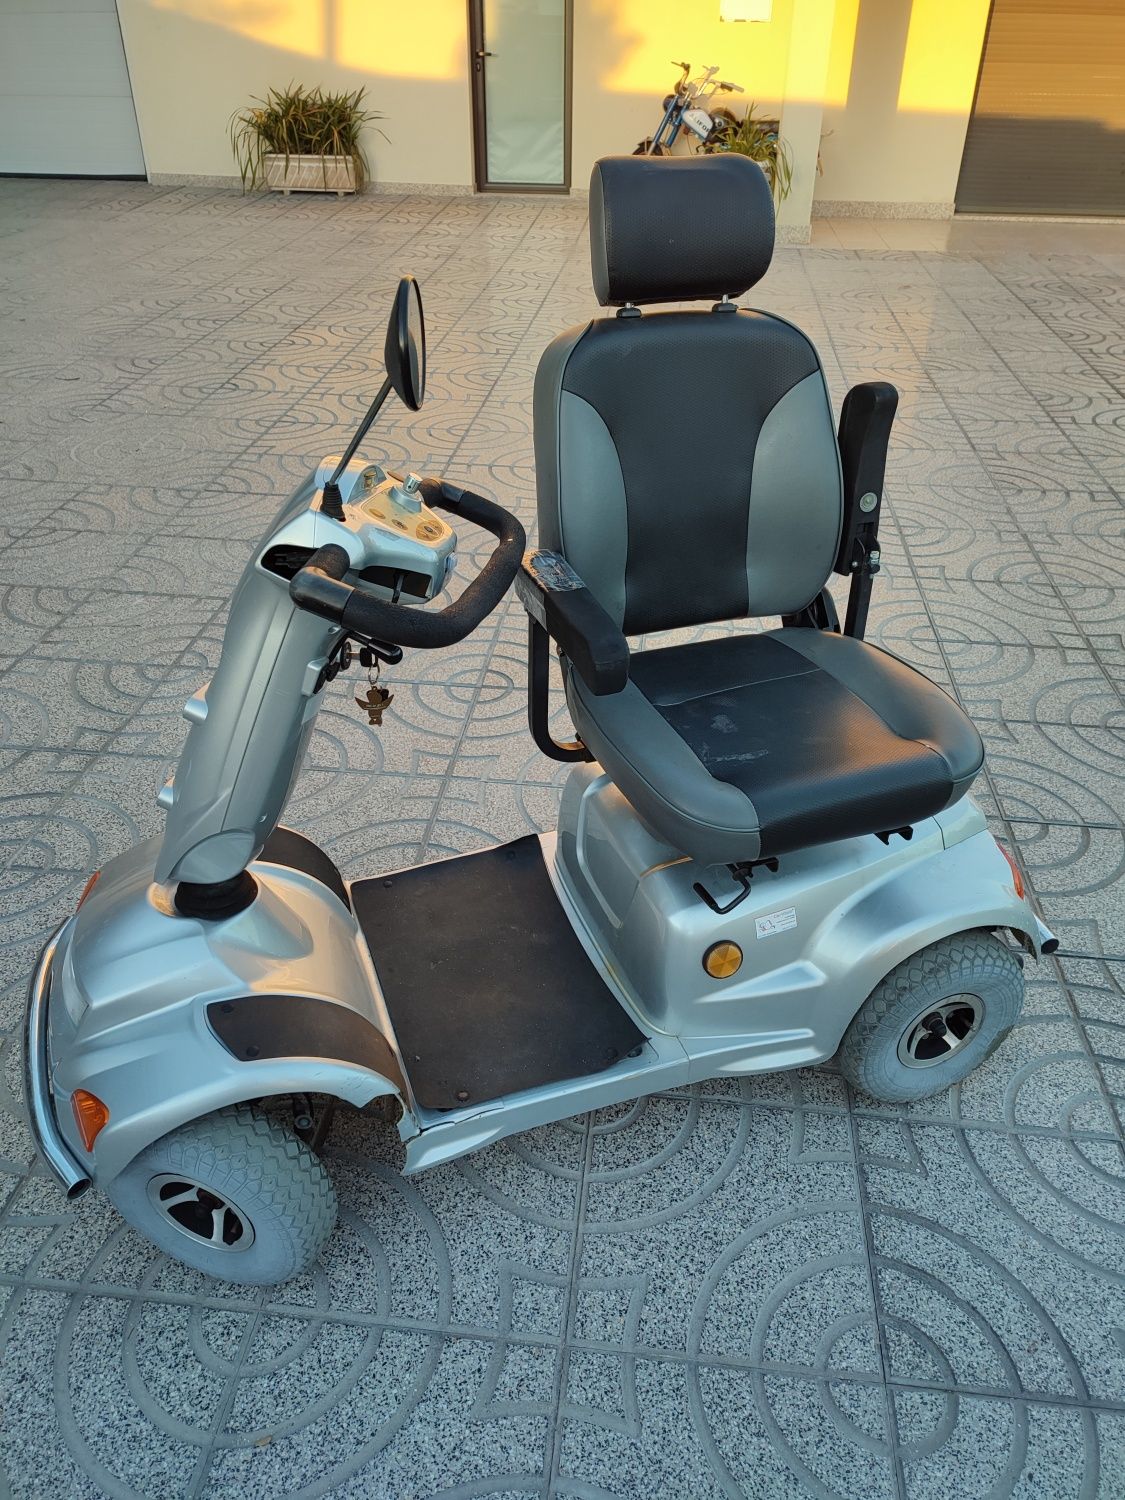 Cadeira de rodas scooter elétrica